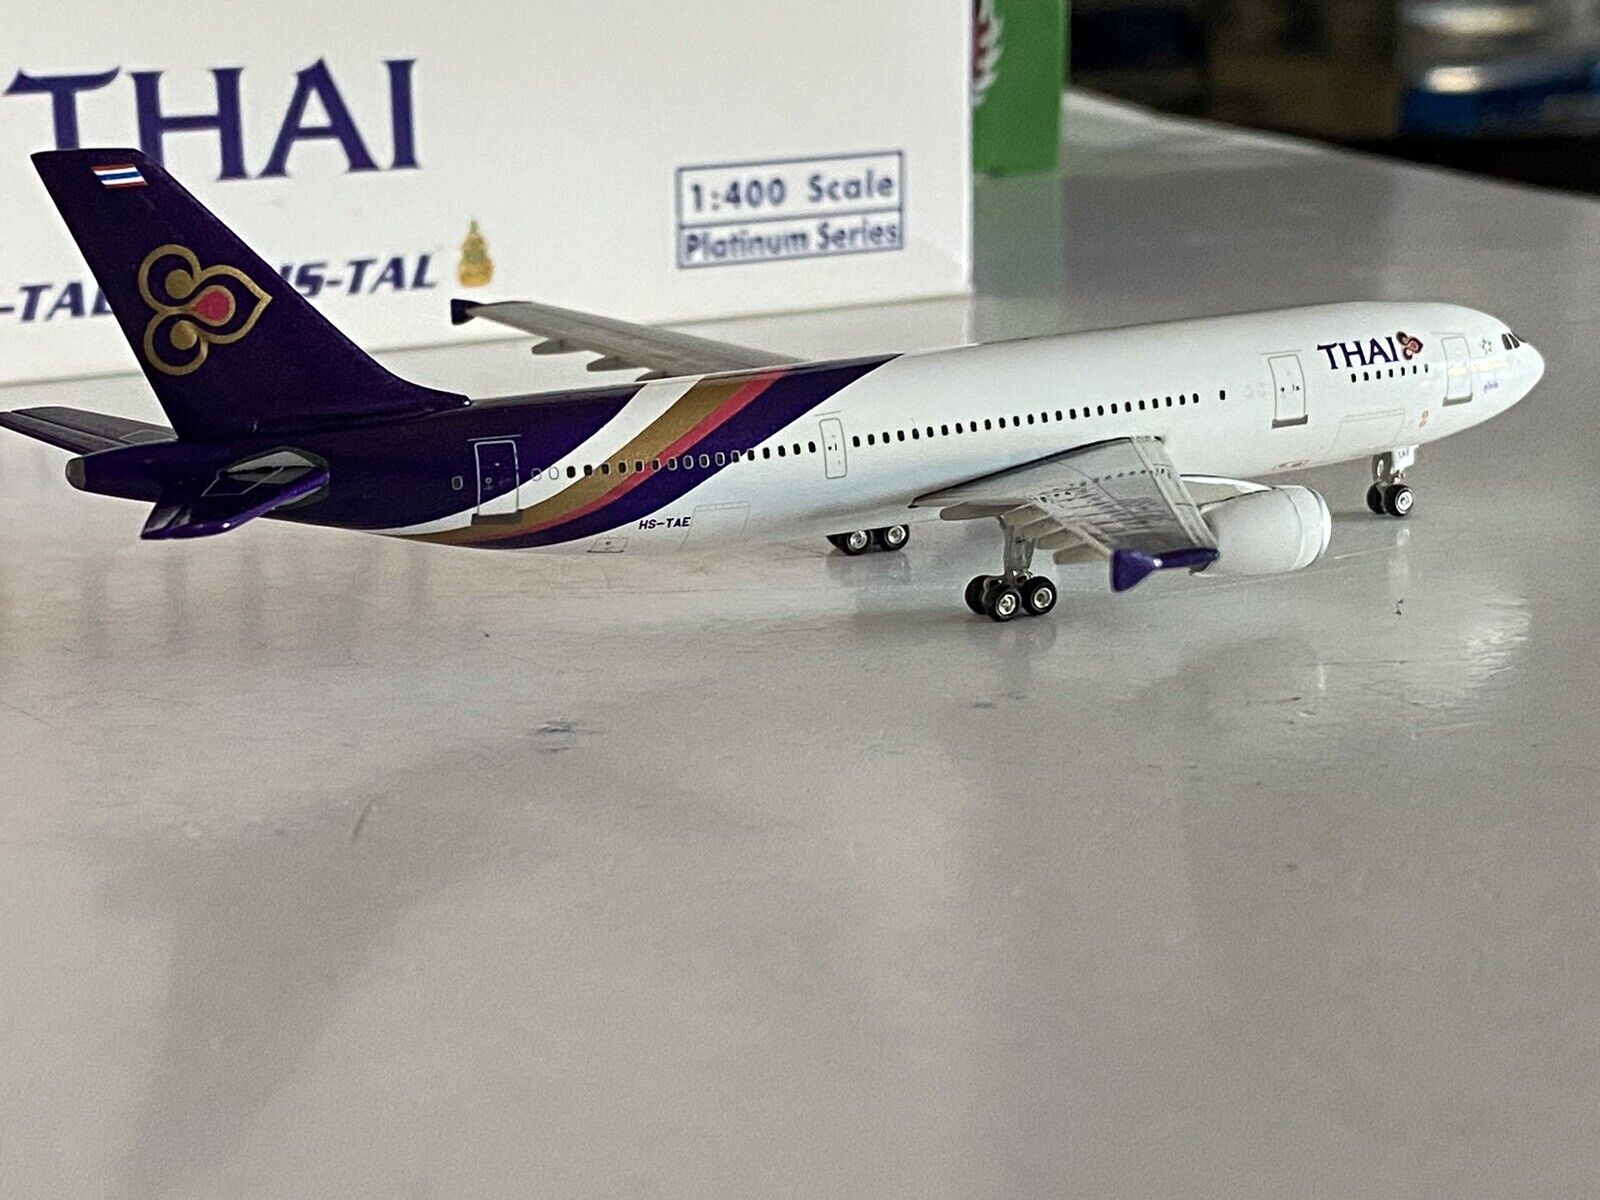 Phoenix Models Thai Airways International Airbus A300-600 1:400 HS-TAE PH4THA334